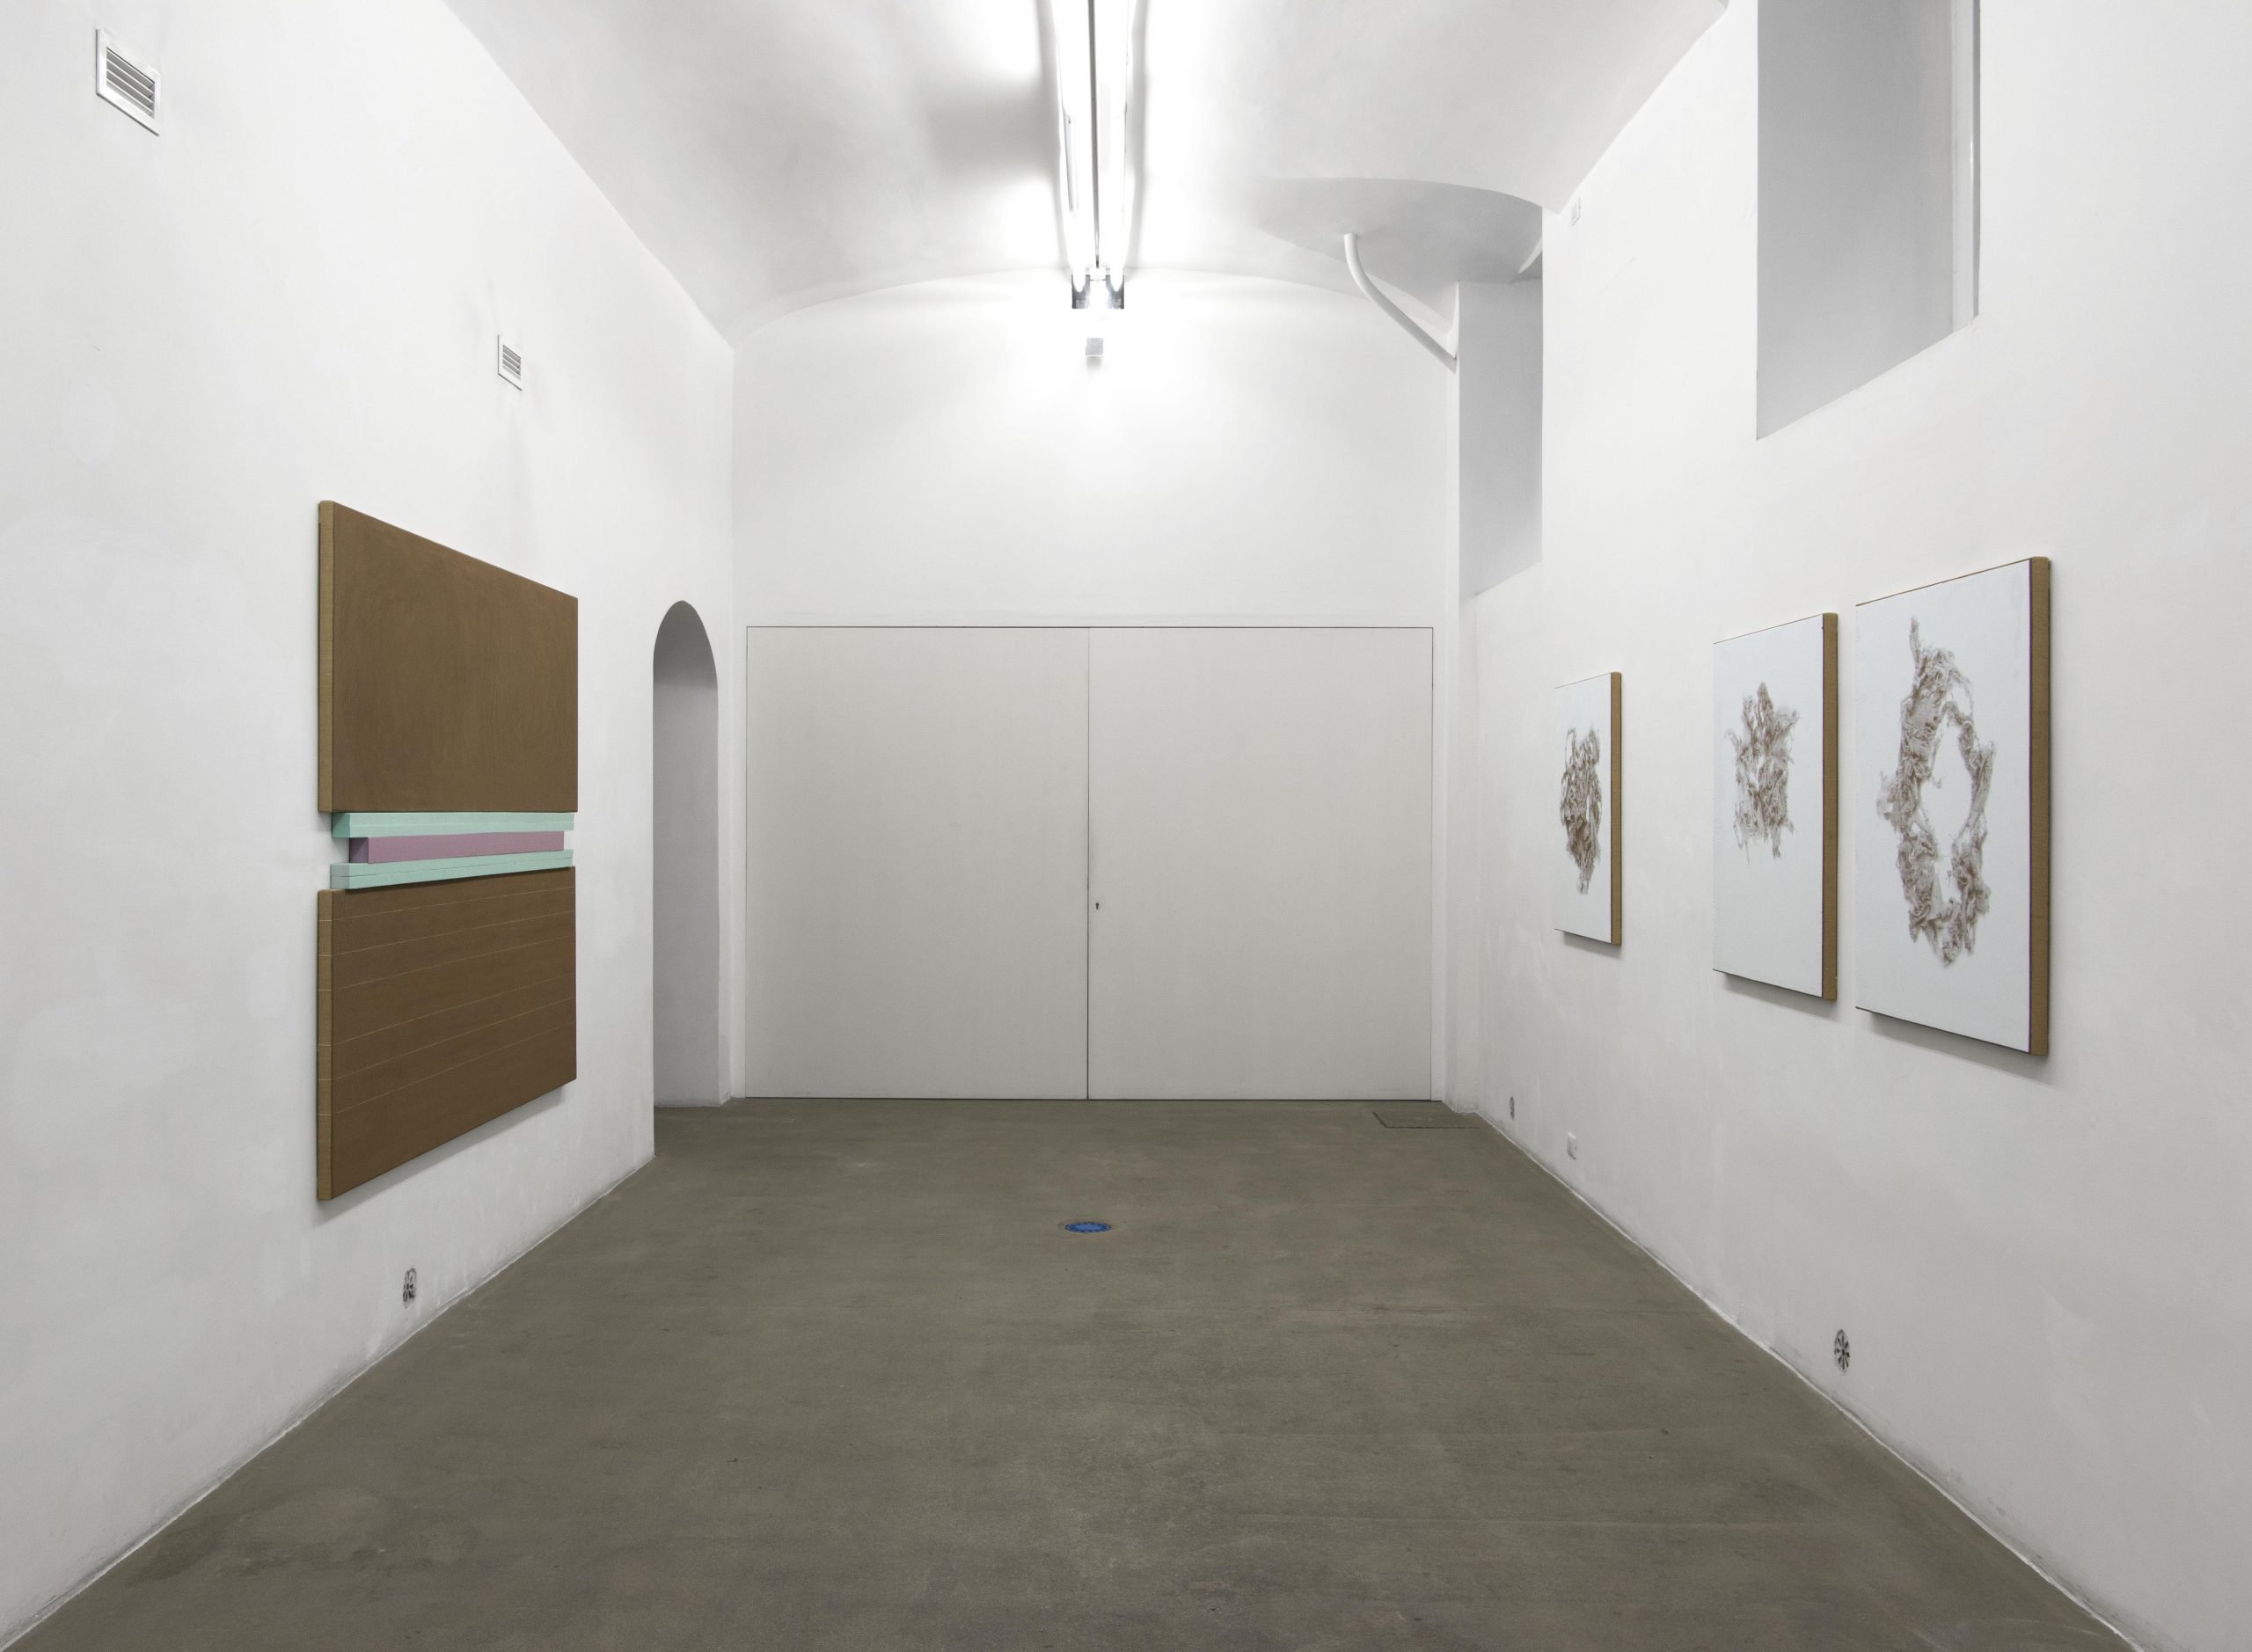 N. Dash. Installation view at Fondazione Giuliani, photo bby Giorgio Benni